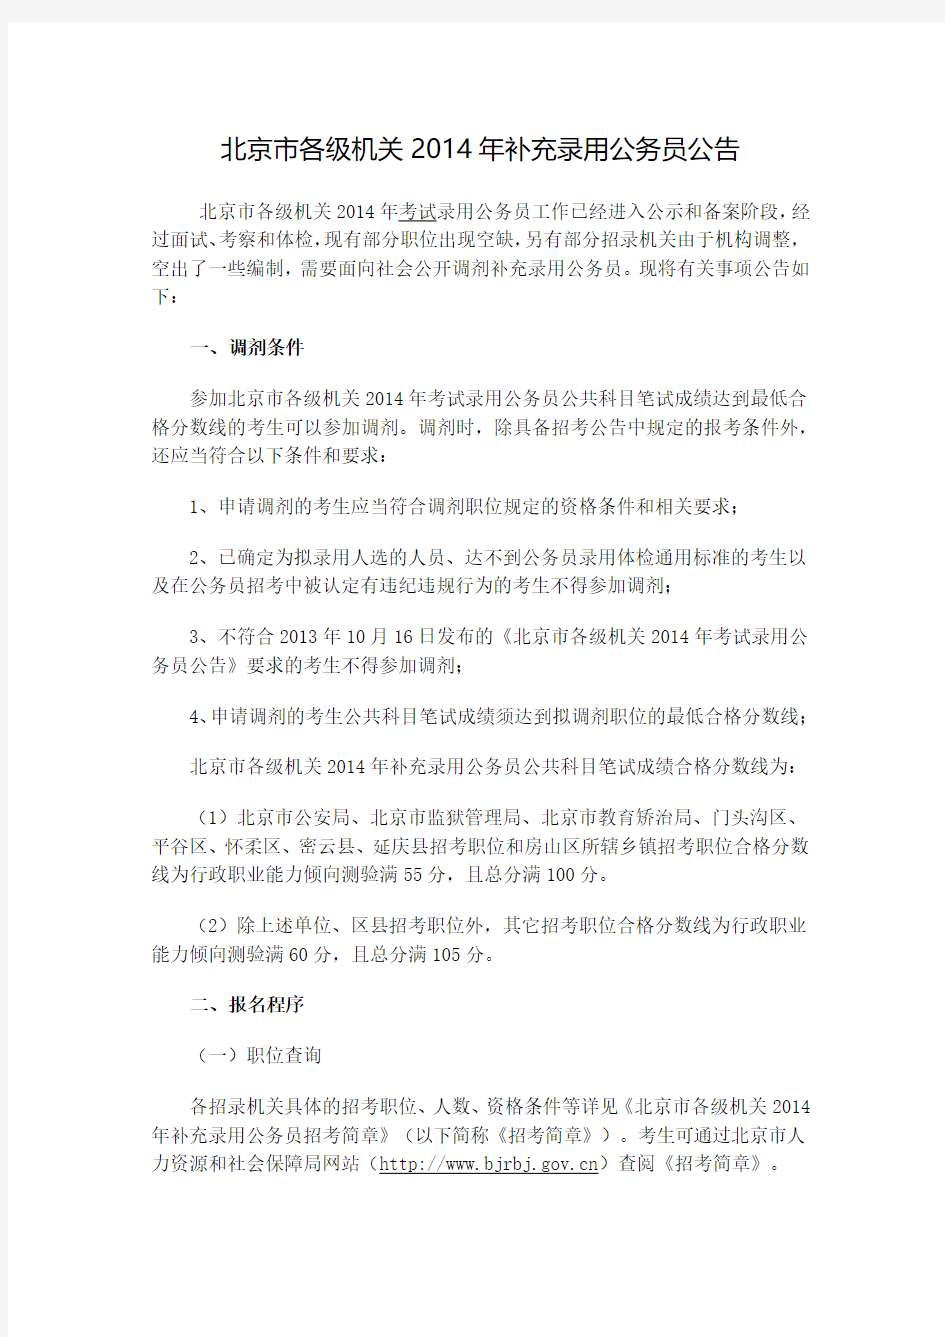 北京市各级机关2014年补充录用公务员公告